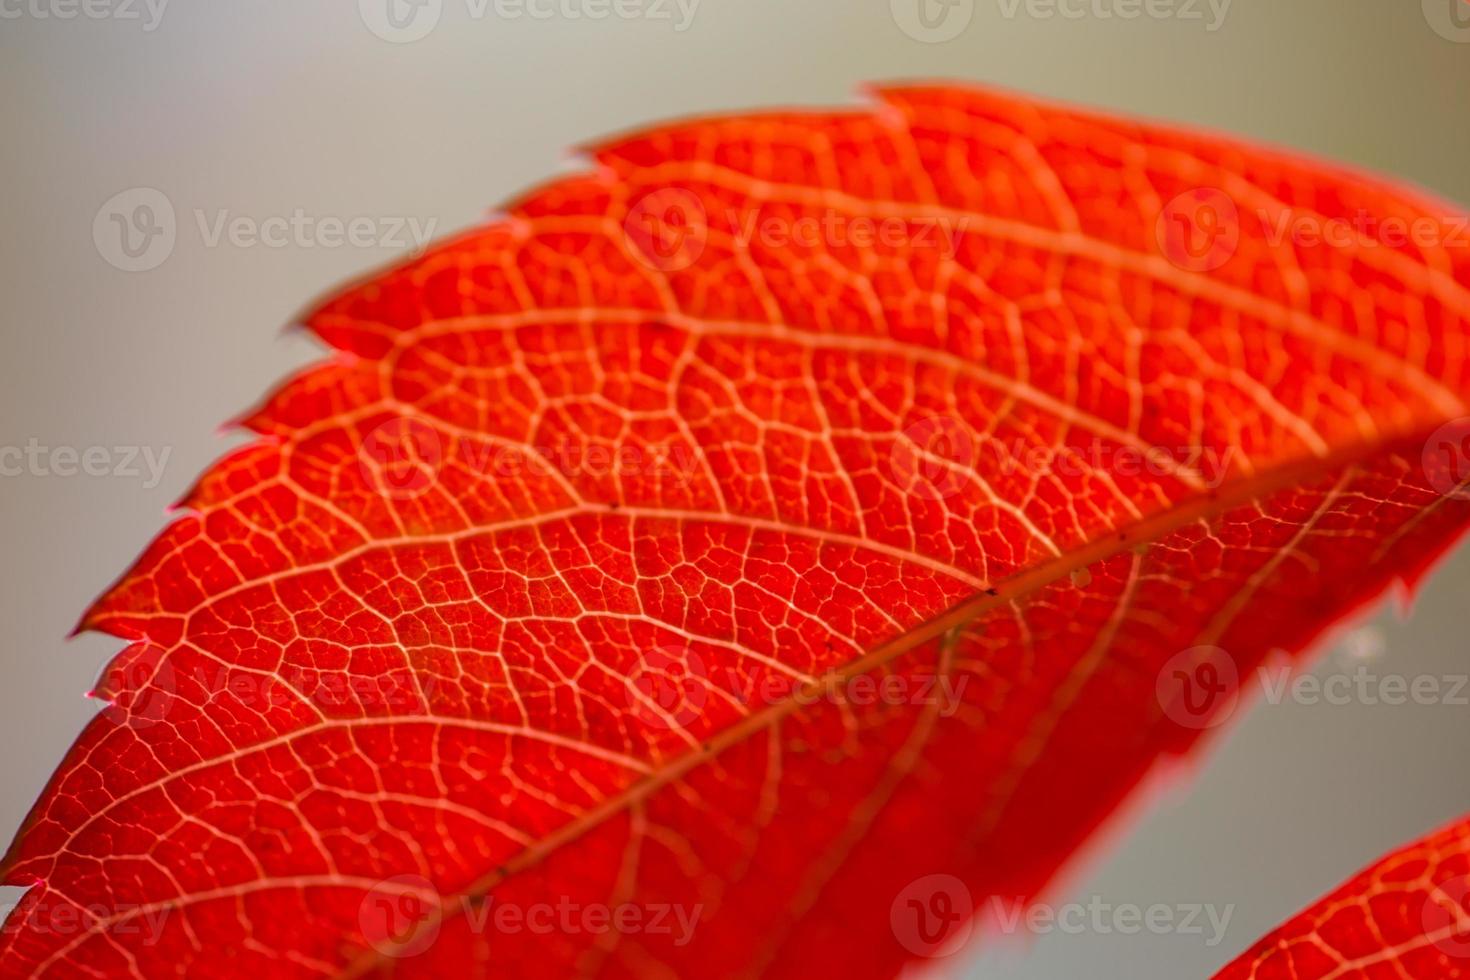 ljusa orange blad av fältbindweed på en solig höstdag makrofotografering. närbild av orange lövverk under hösten. botanisk fotografi av vilda druvor med gula blad i solljus. foto